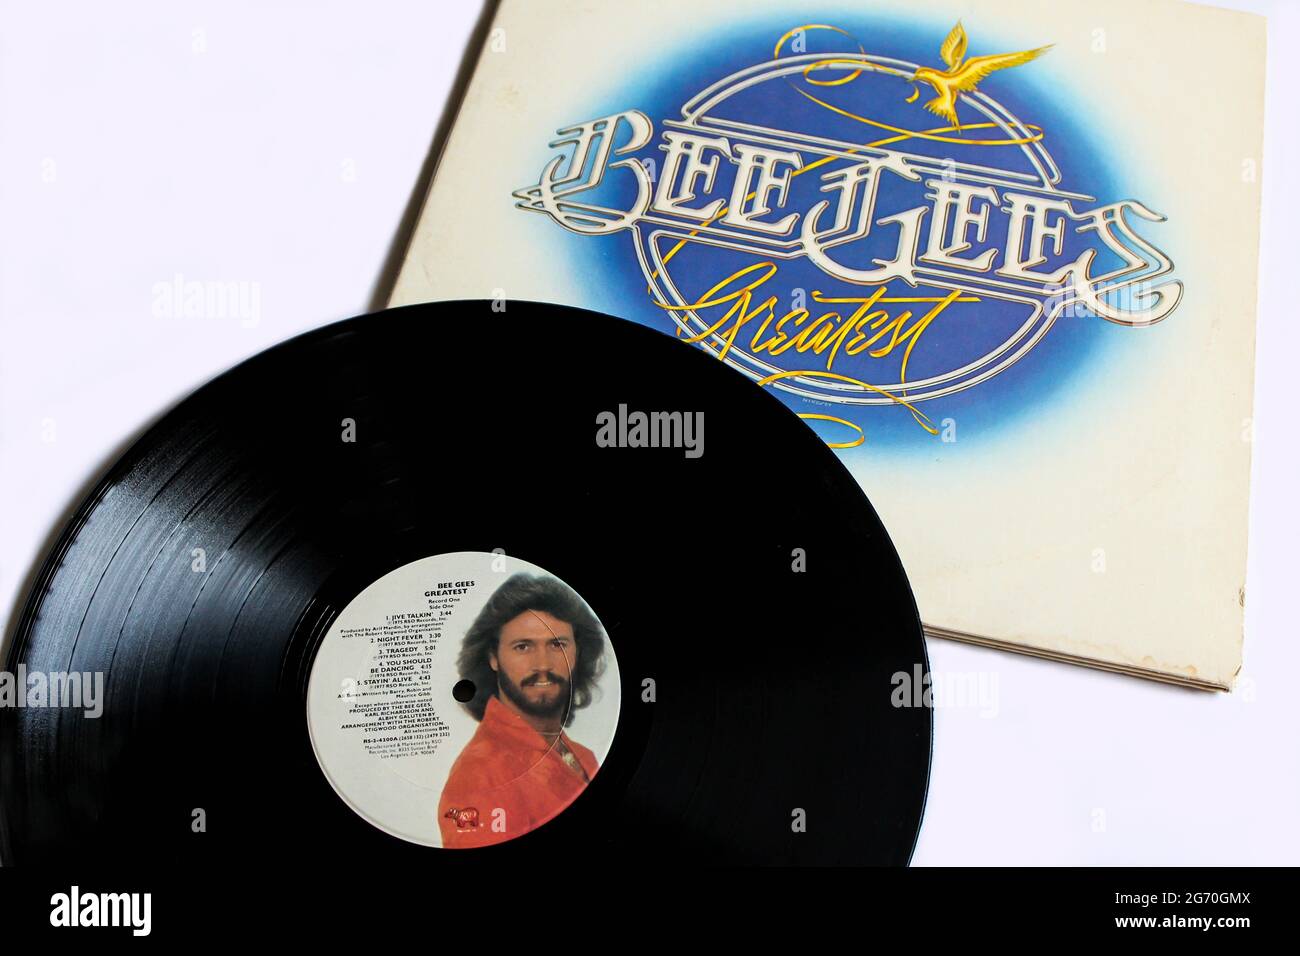 Disco and Soul artistes, l'album musical Bee Gees sur disque vinyle LP. Intitulé: La couverture de l'album Bee Gees Greatest Banque D'Images